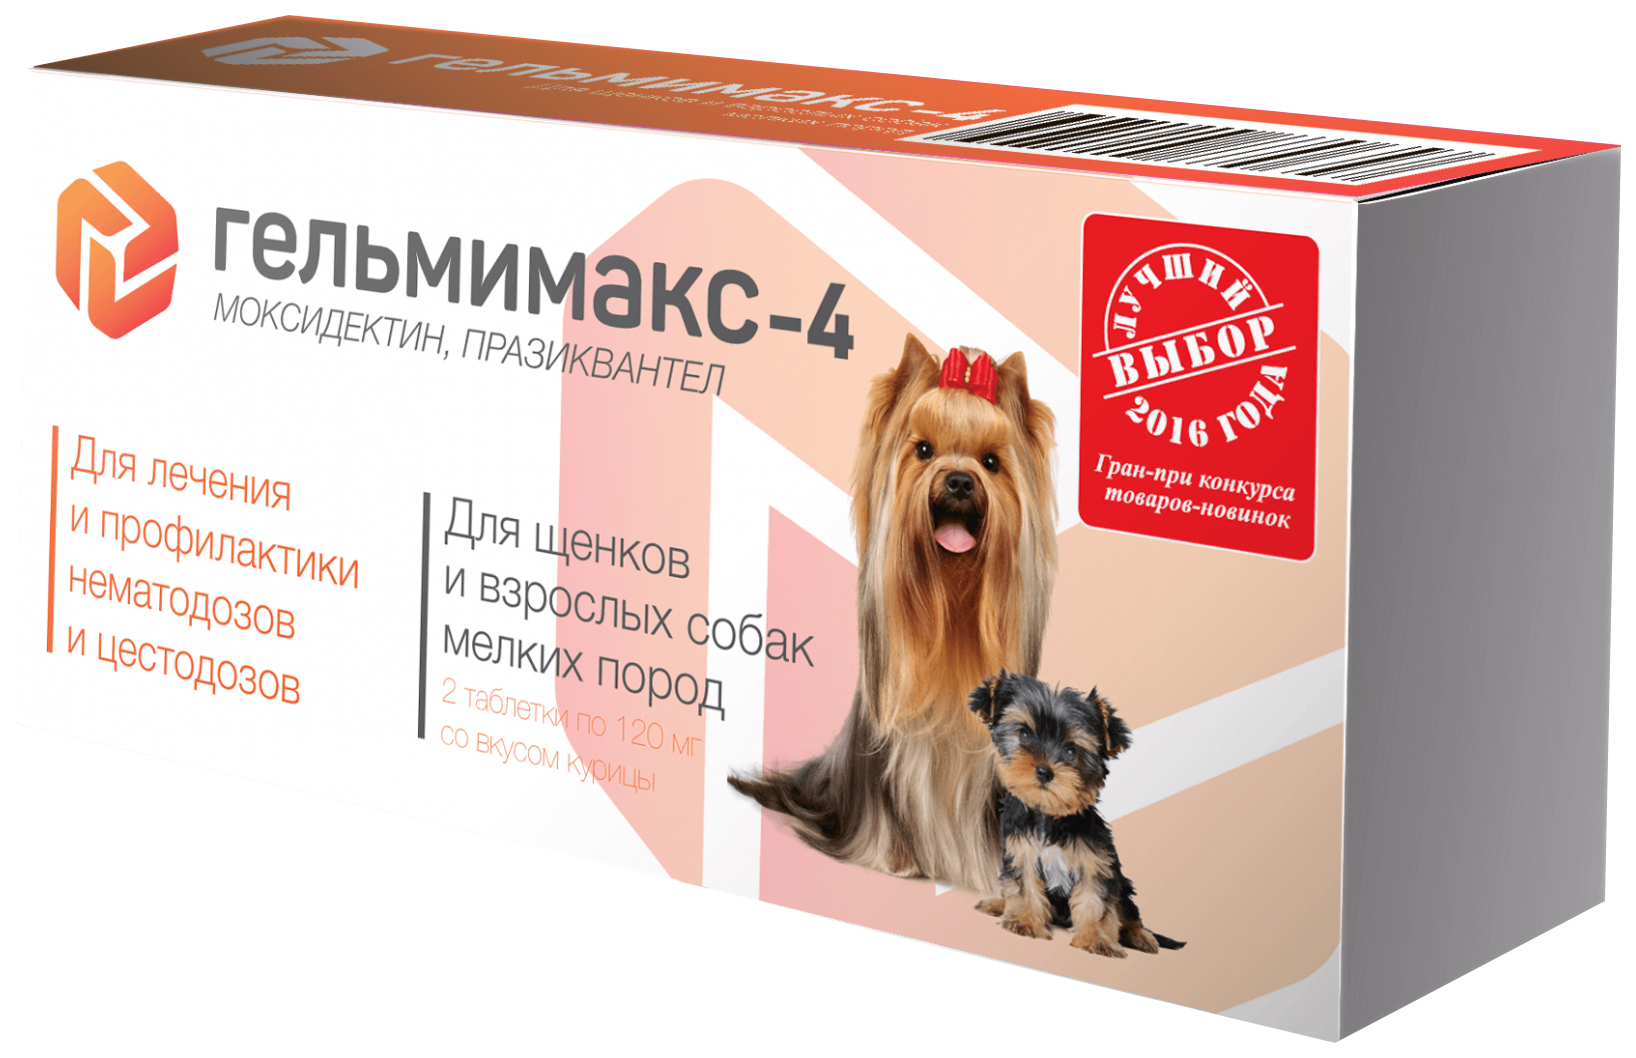 Антигельминтик для щенков и собак мелких пород apicenna Гельмимакс-4, 120 мг, 2 табл